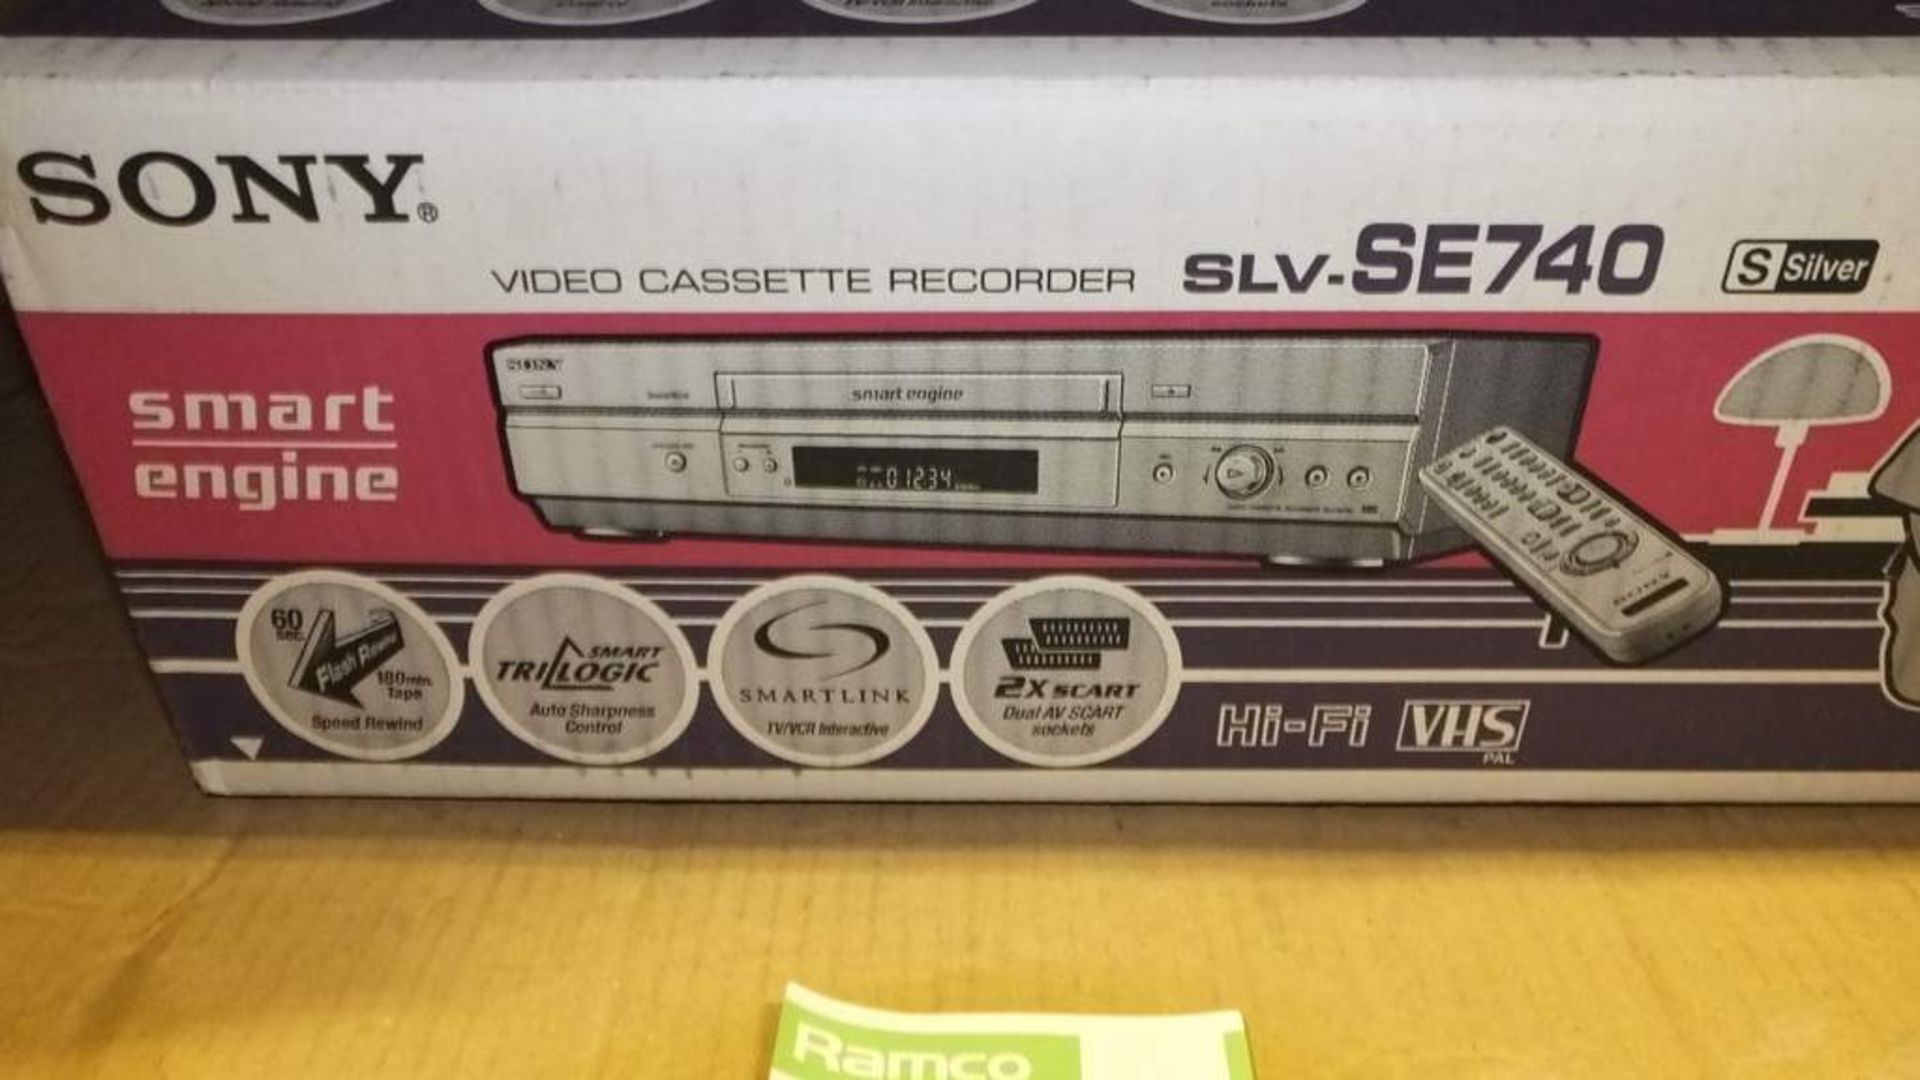 Sony Video cassette recorder SLV-SE740